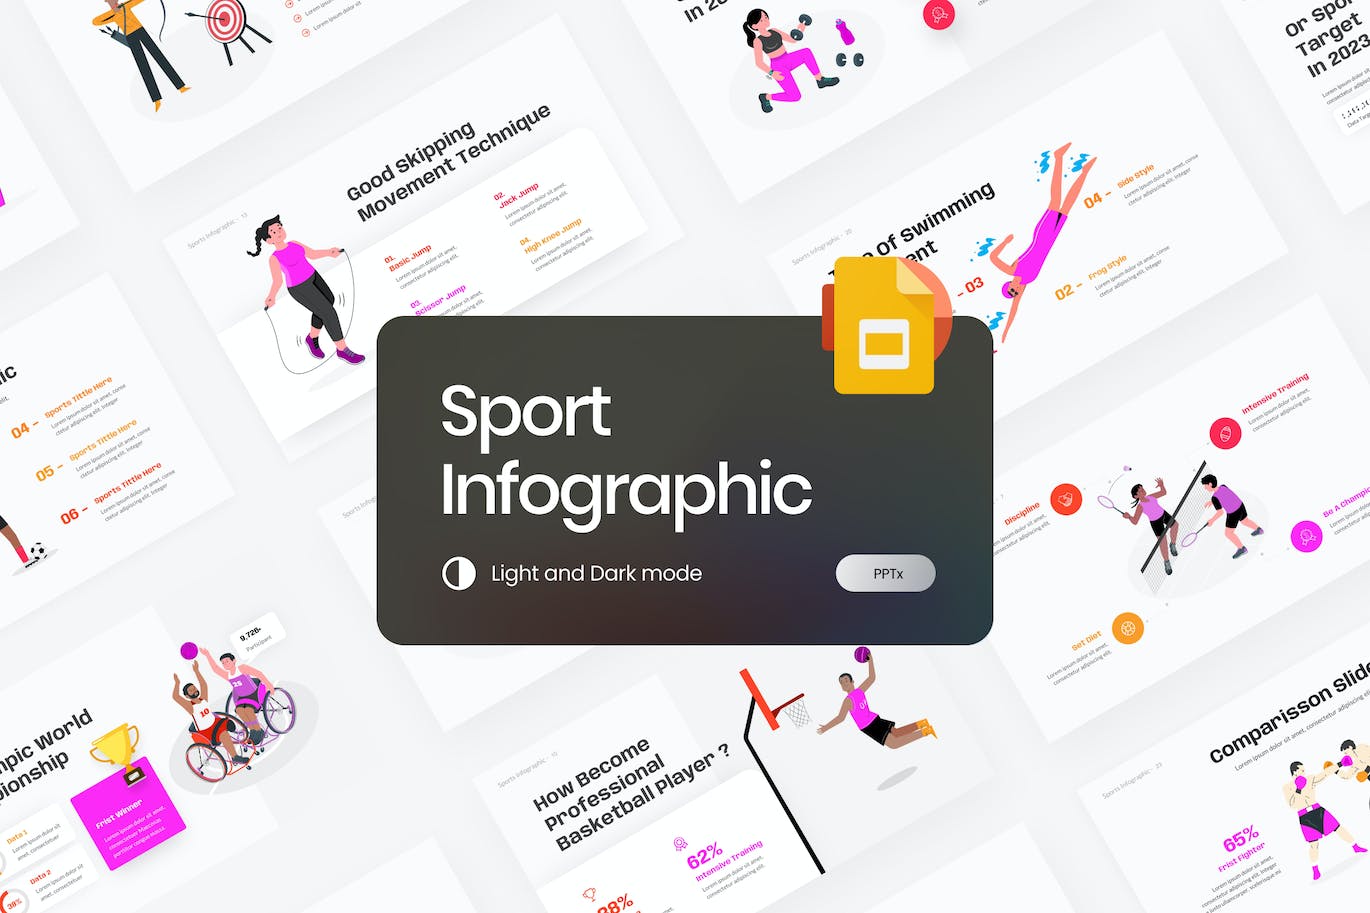 运动信息图表谷歌幻灯片模板下载 Sport Infographic Google Slides Template 幻灯图表 第1张